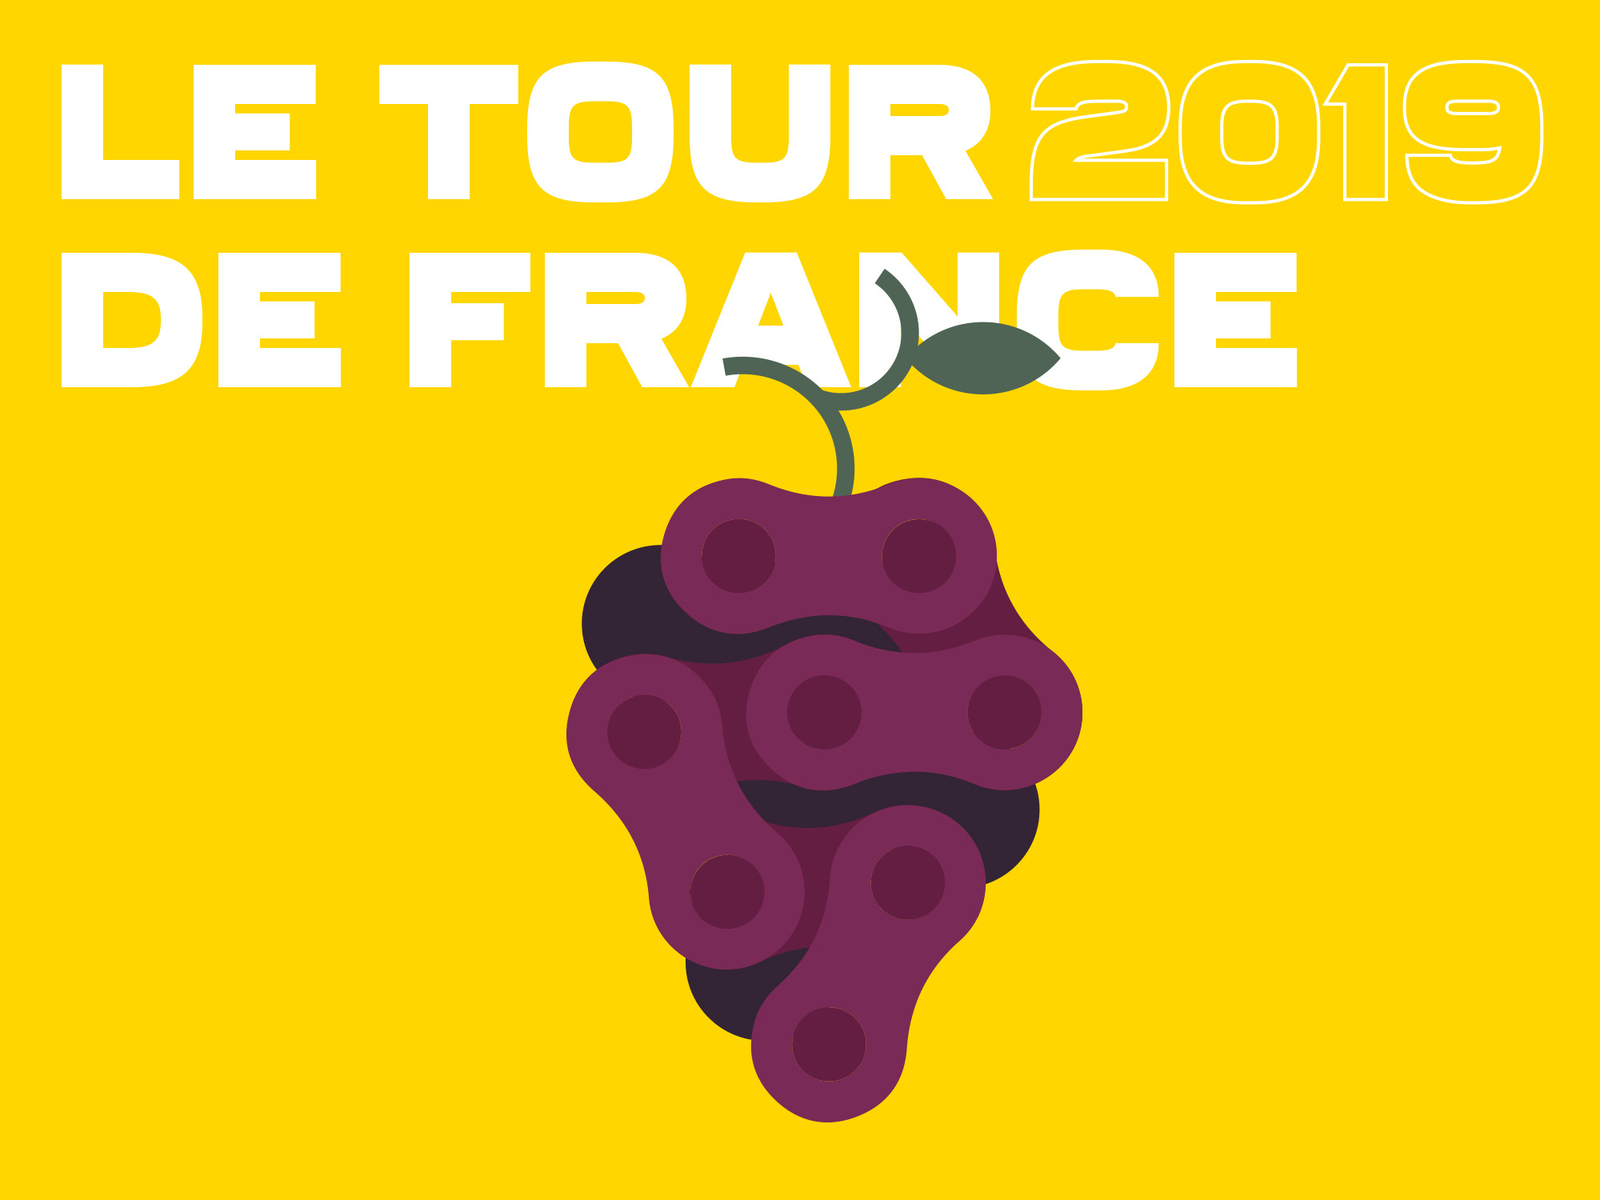 Tour de France 2/2 bike chain cyclism cyclist france french grapes illustration minimalist paris tour de france wine